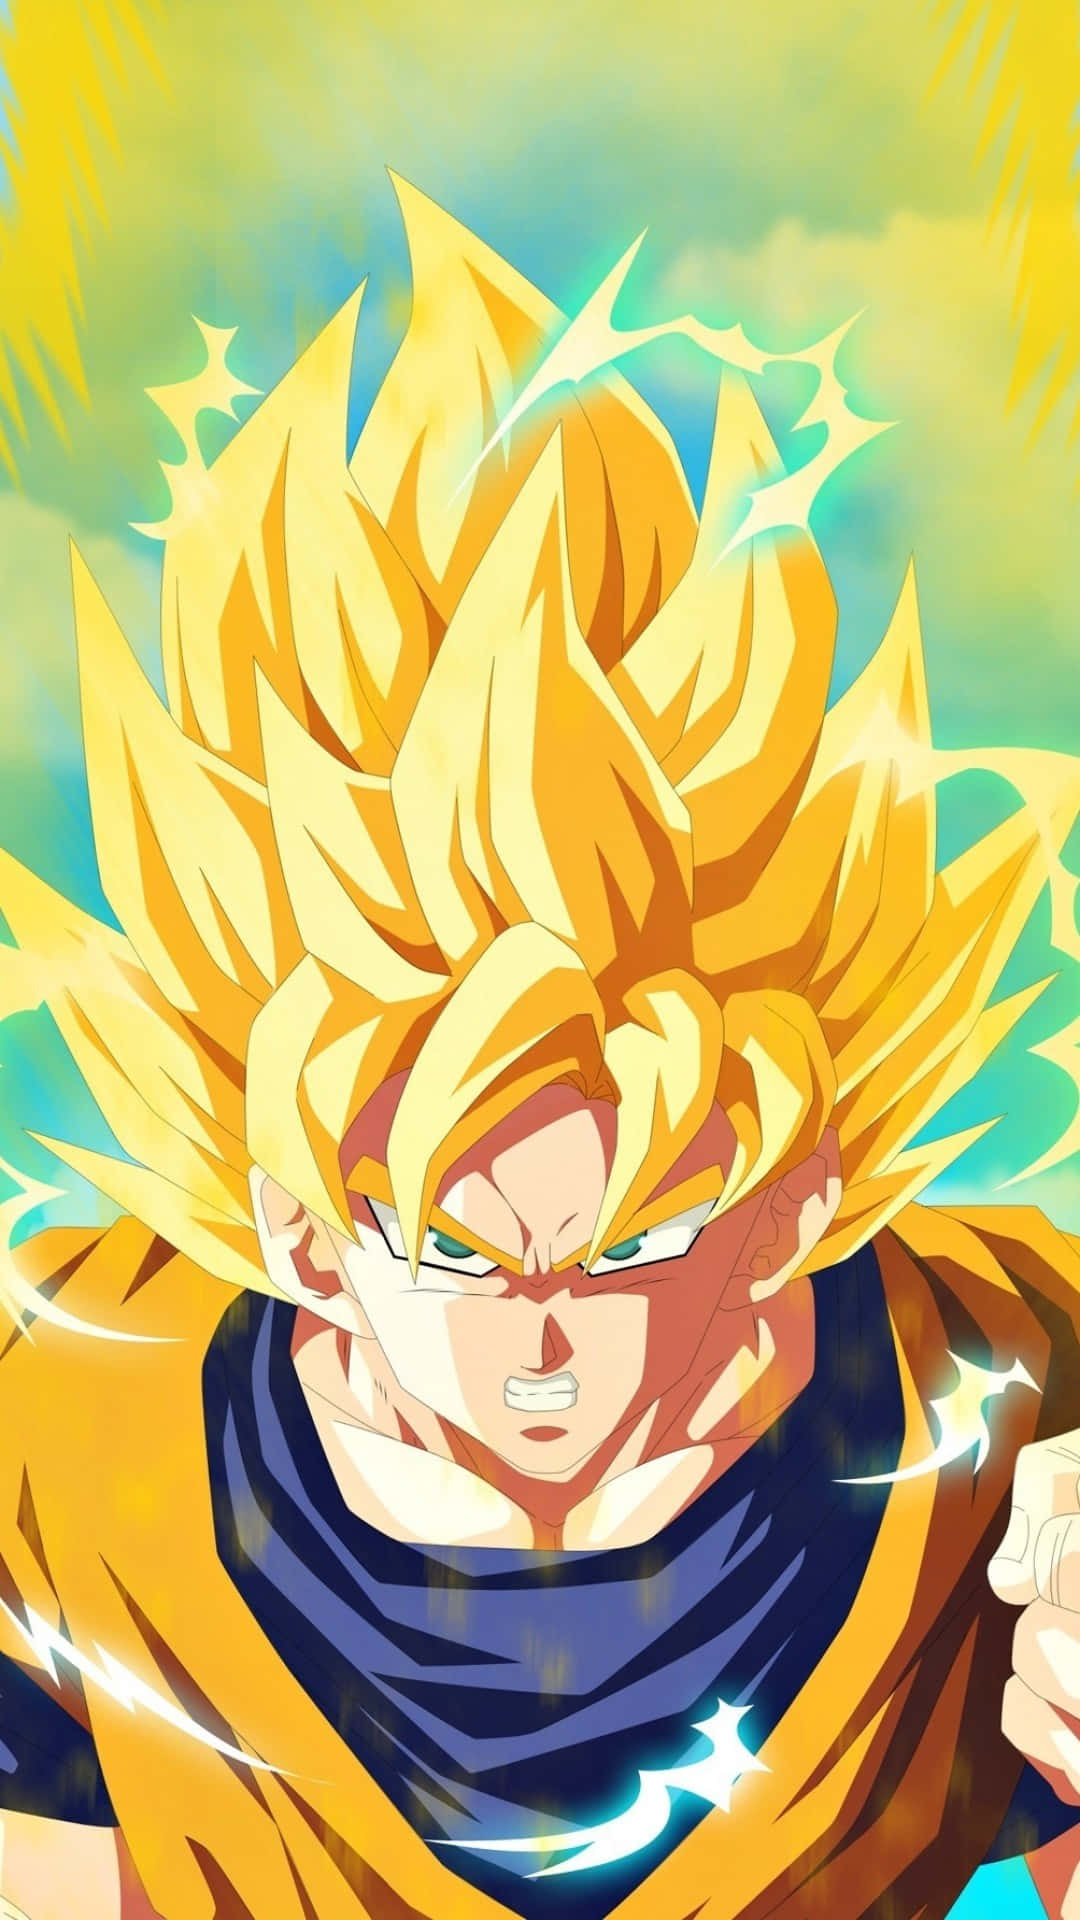 Imagende Goku En Dragon Ball Z De Color Amarillo Dorado